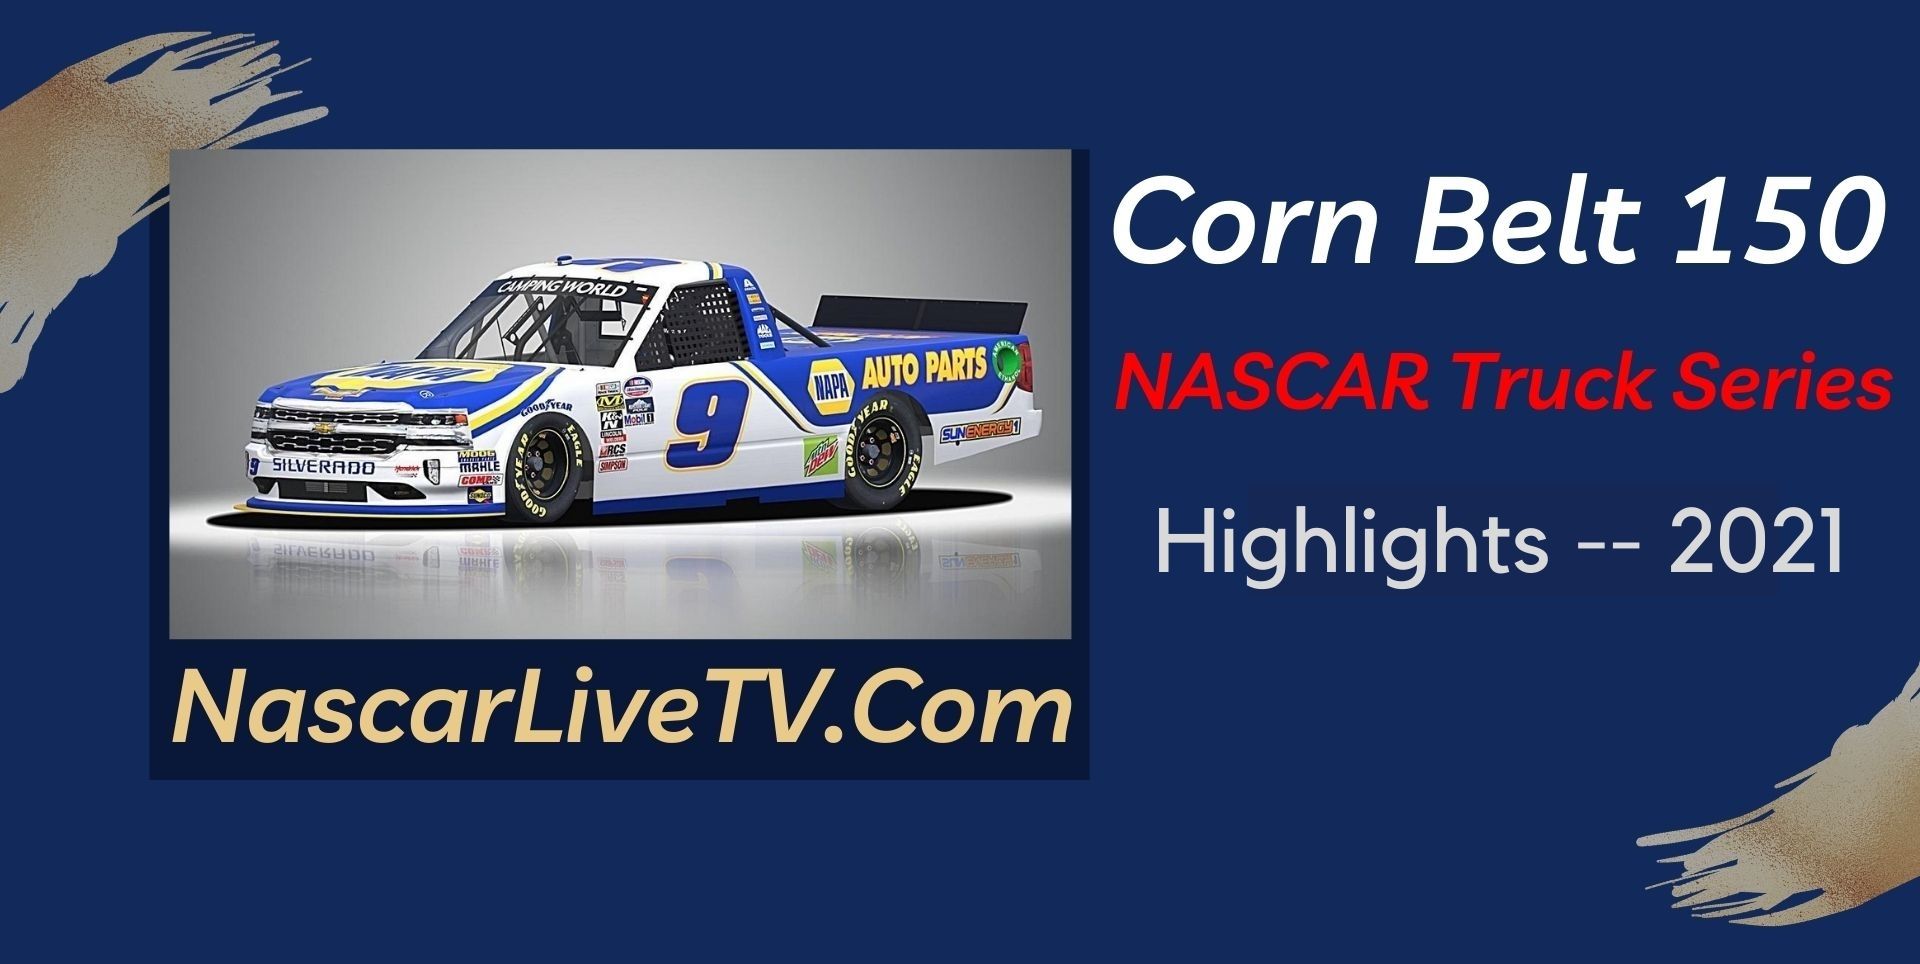 Corn Belt 150 Highlights NASCAR Truck Series 2021